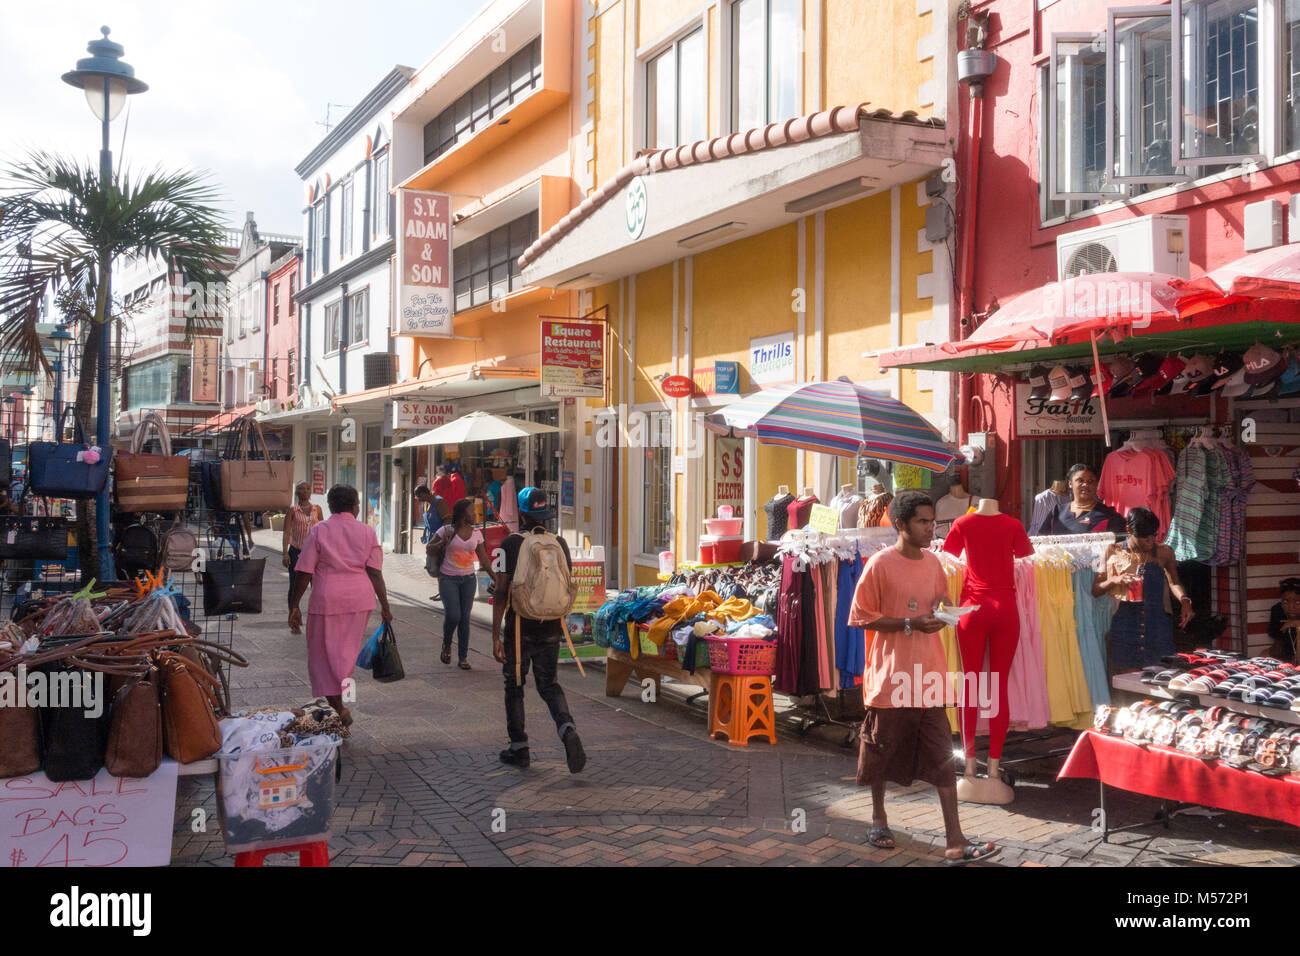 Les étals de marché dans une rue à Bridgetown, Barbade Banque D'Images